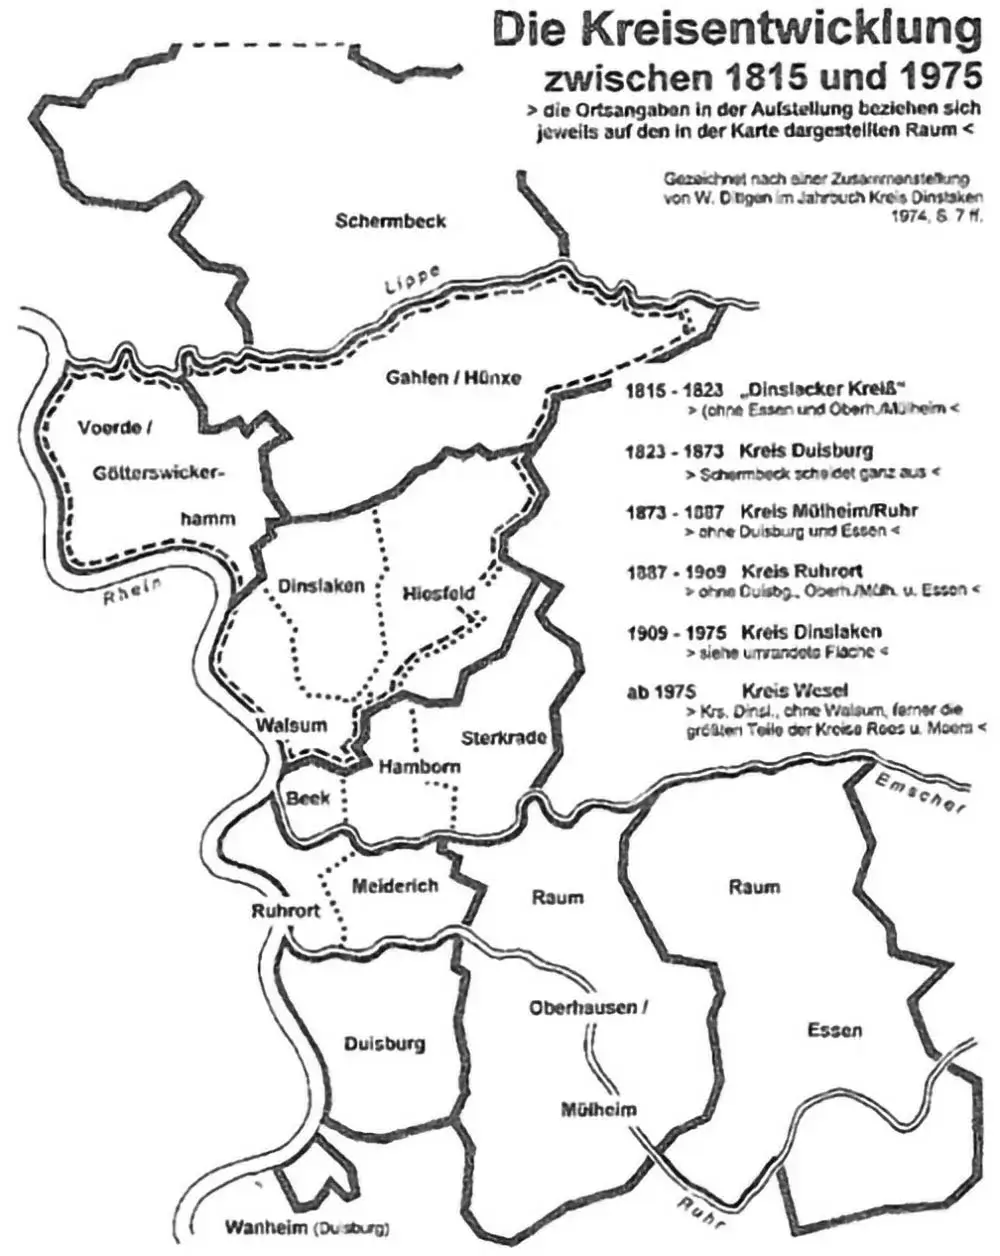 Die Kreisentwicklung zwischen 1815 und 1975